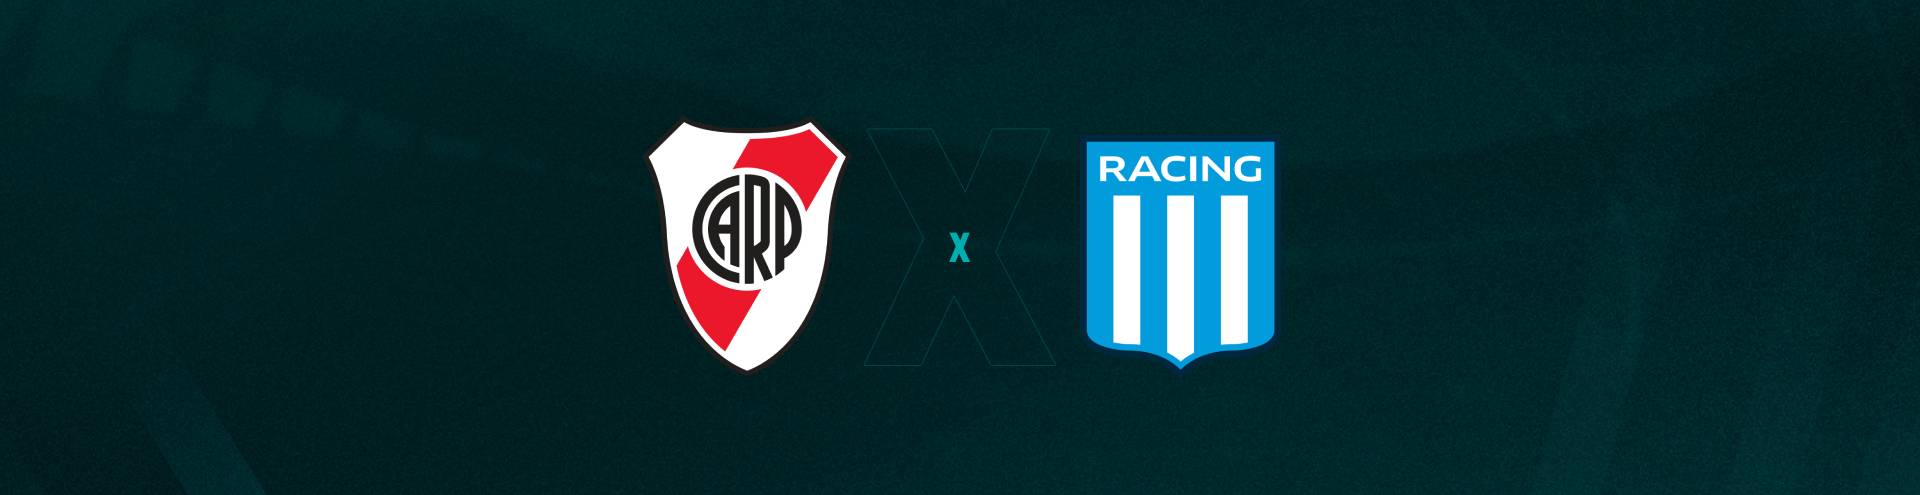 River Plate Feminino x Racing Club Feminino » Placar ao vivo, Palpites,  Estatísticas + Odds